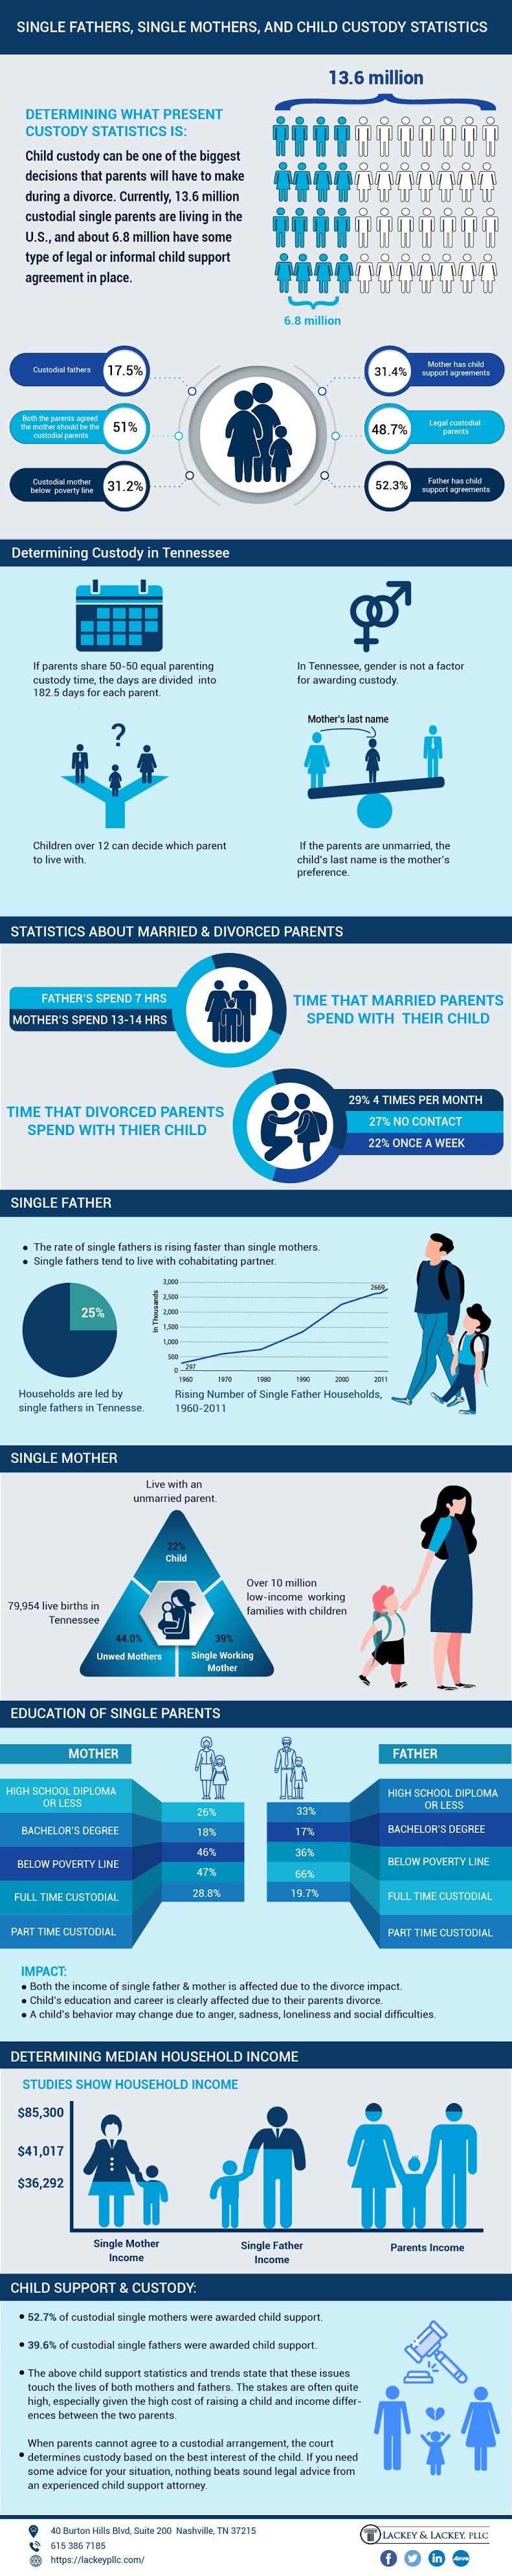 enlige forældre infografik